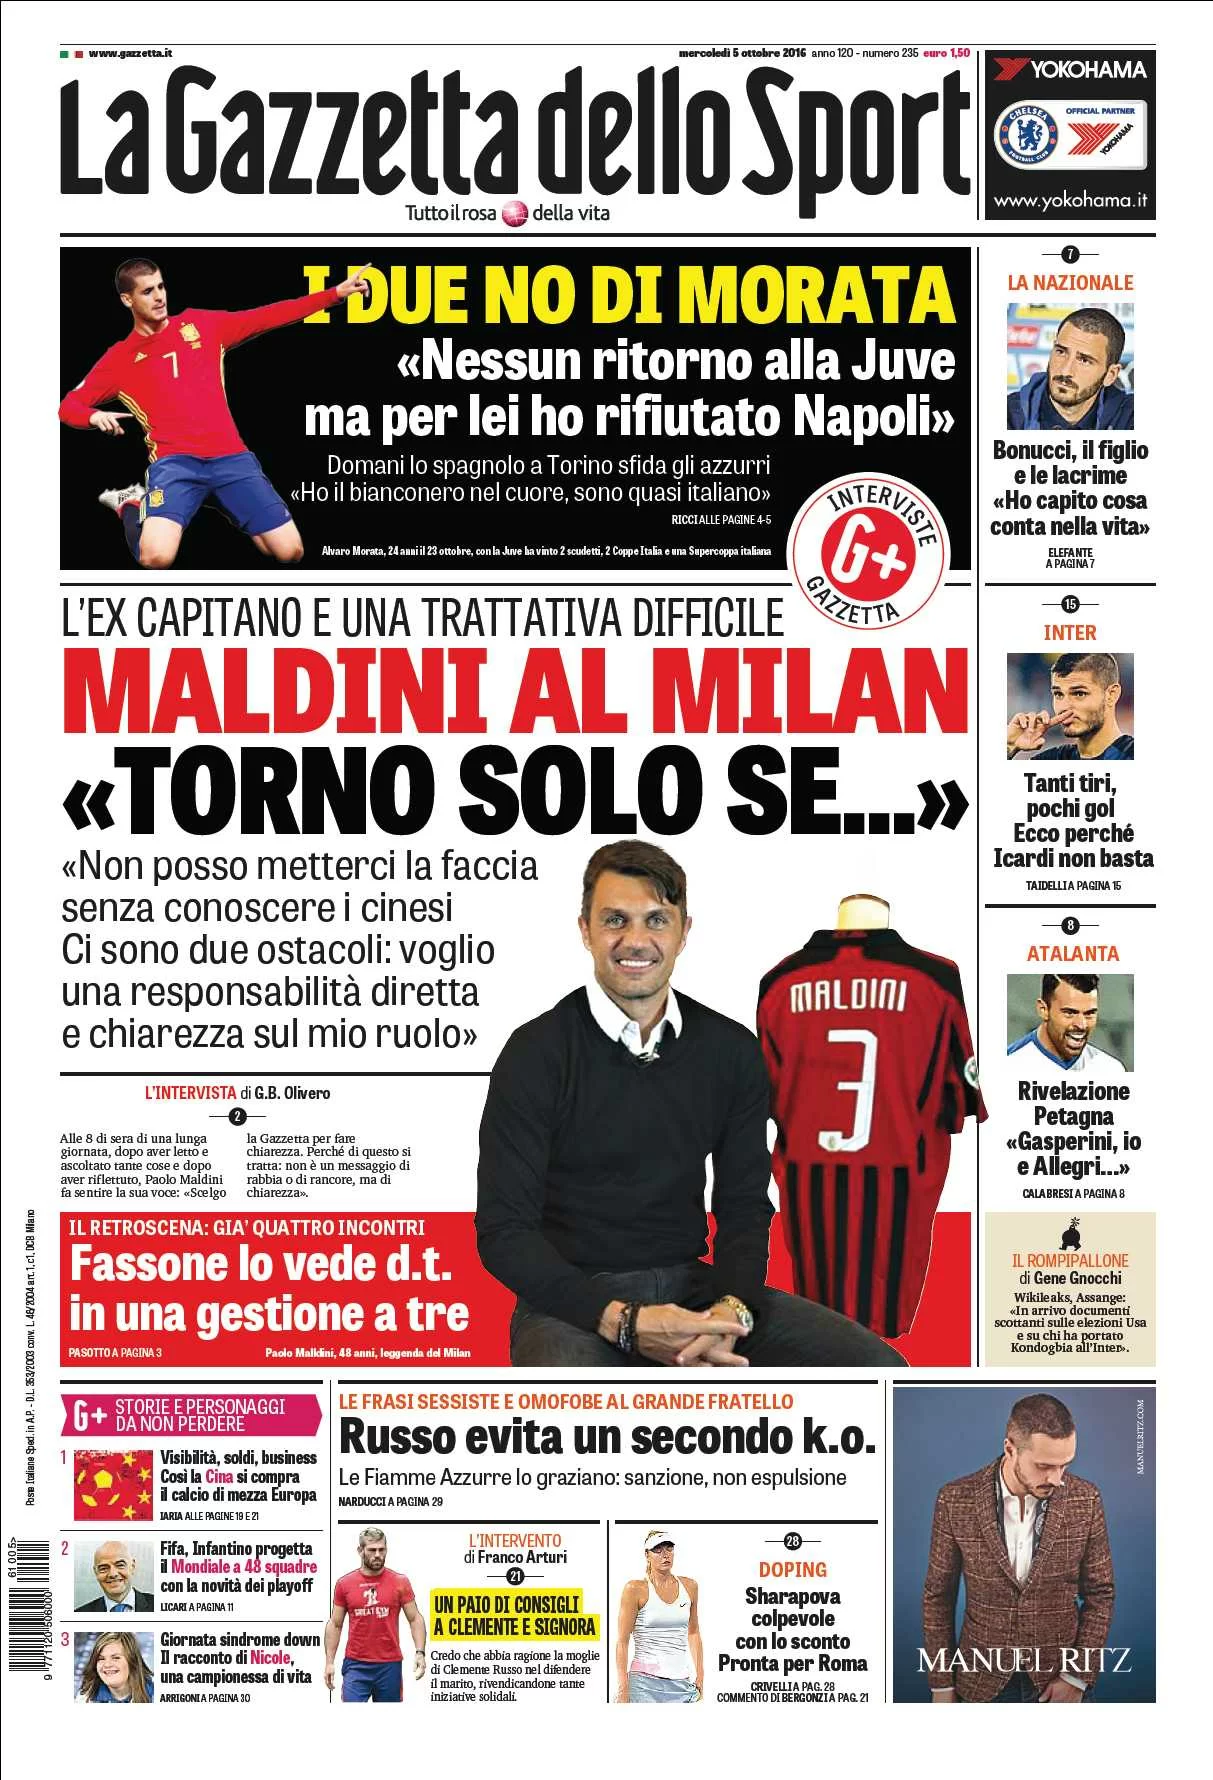 GaSport, “Maldini al Milan: torno solo se…”